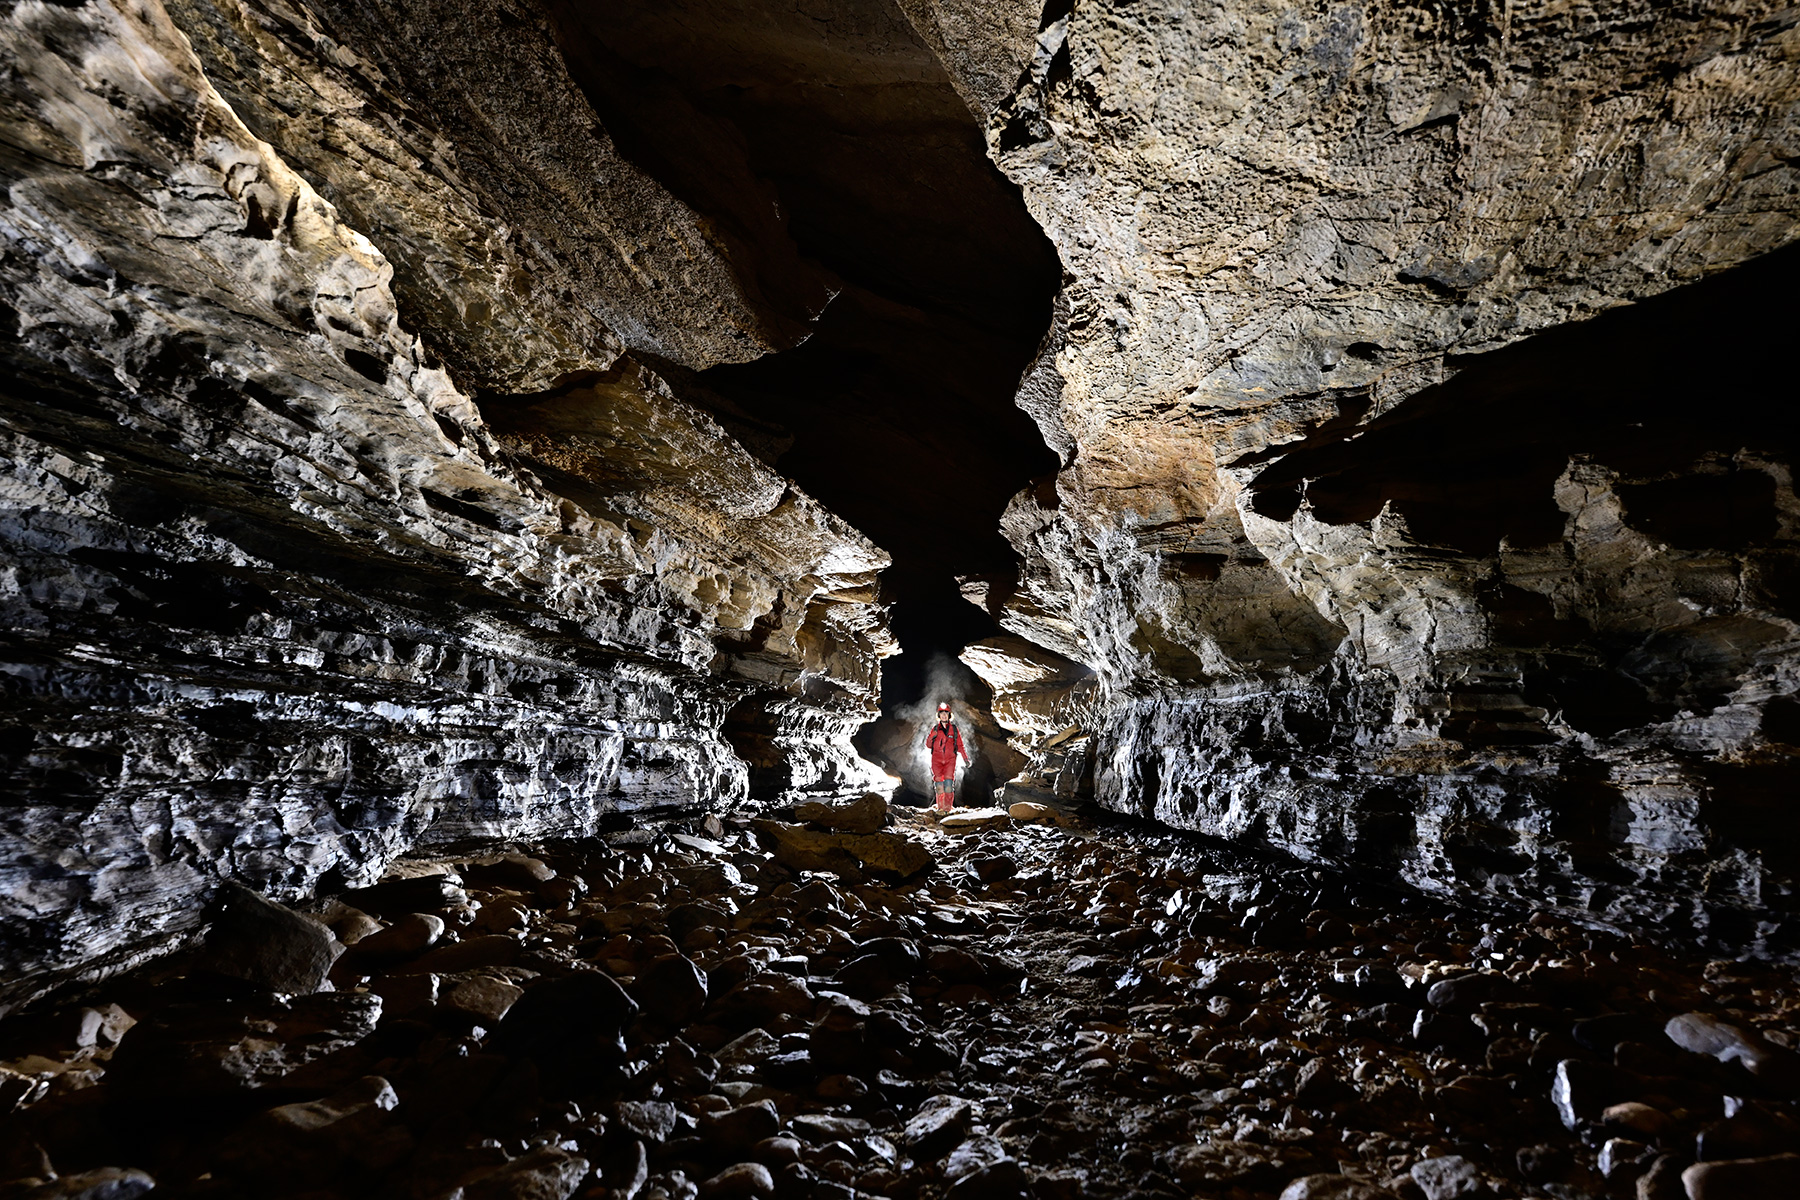 Butler cave (Virginie, USA) - Galerie au sol couvert de galets